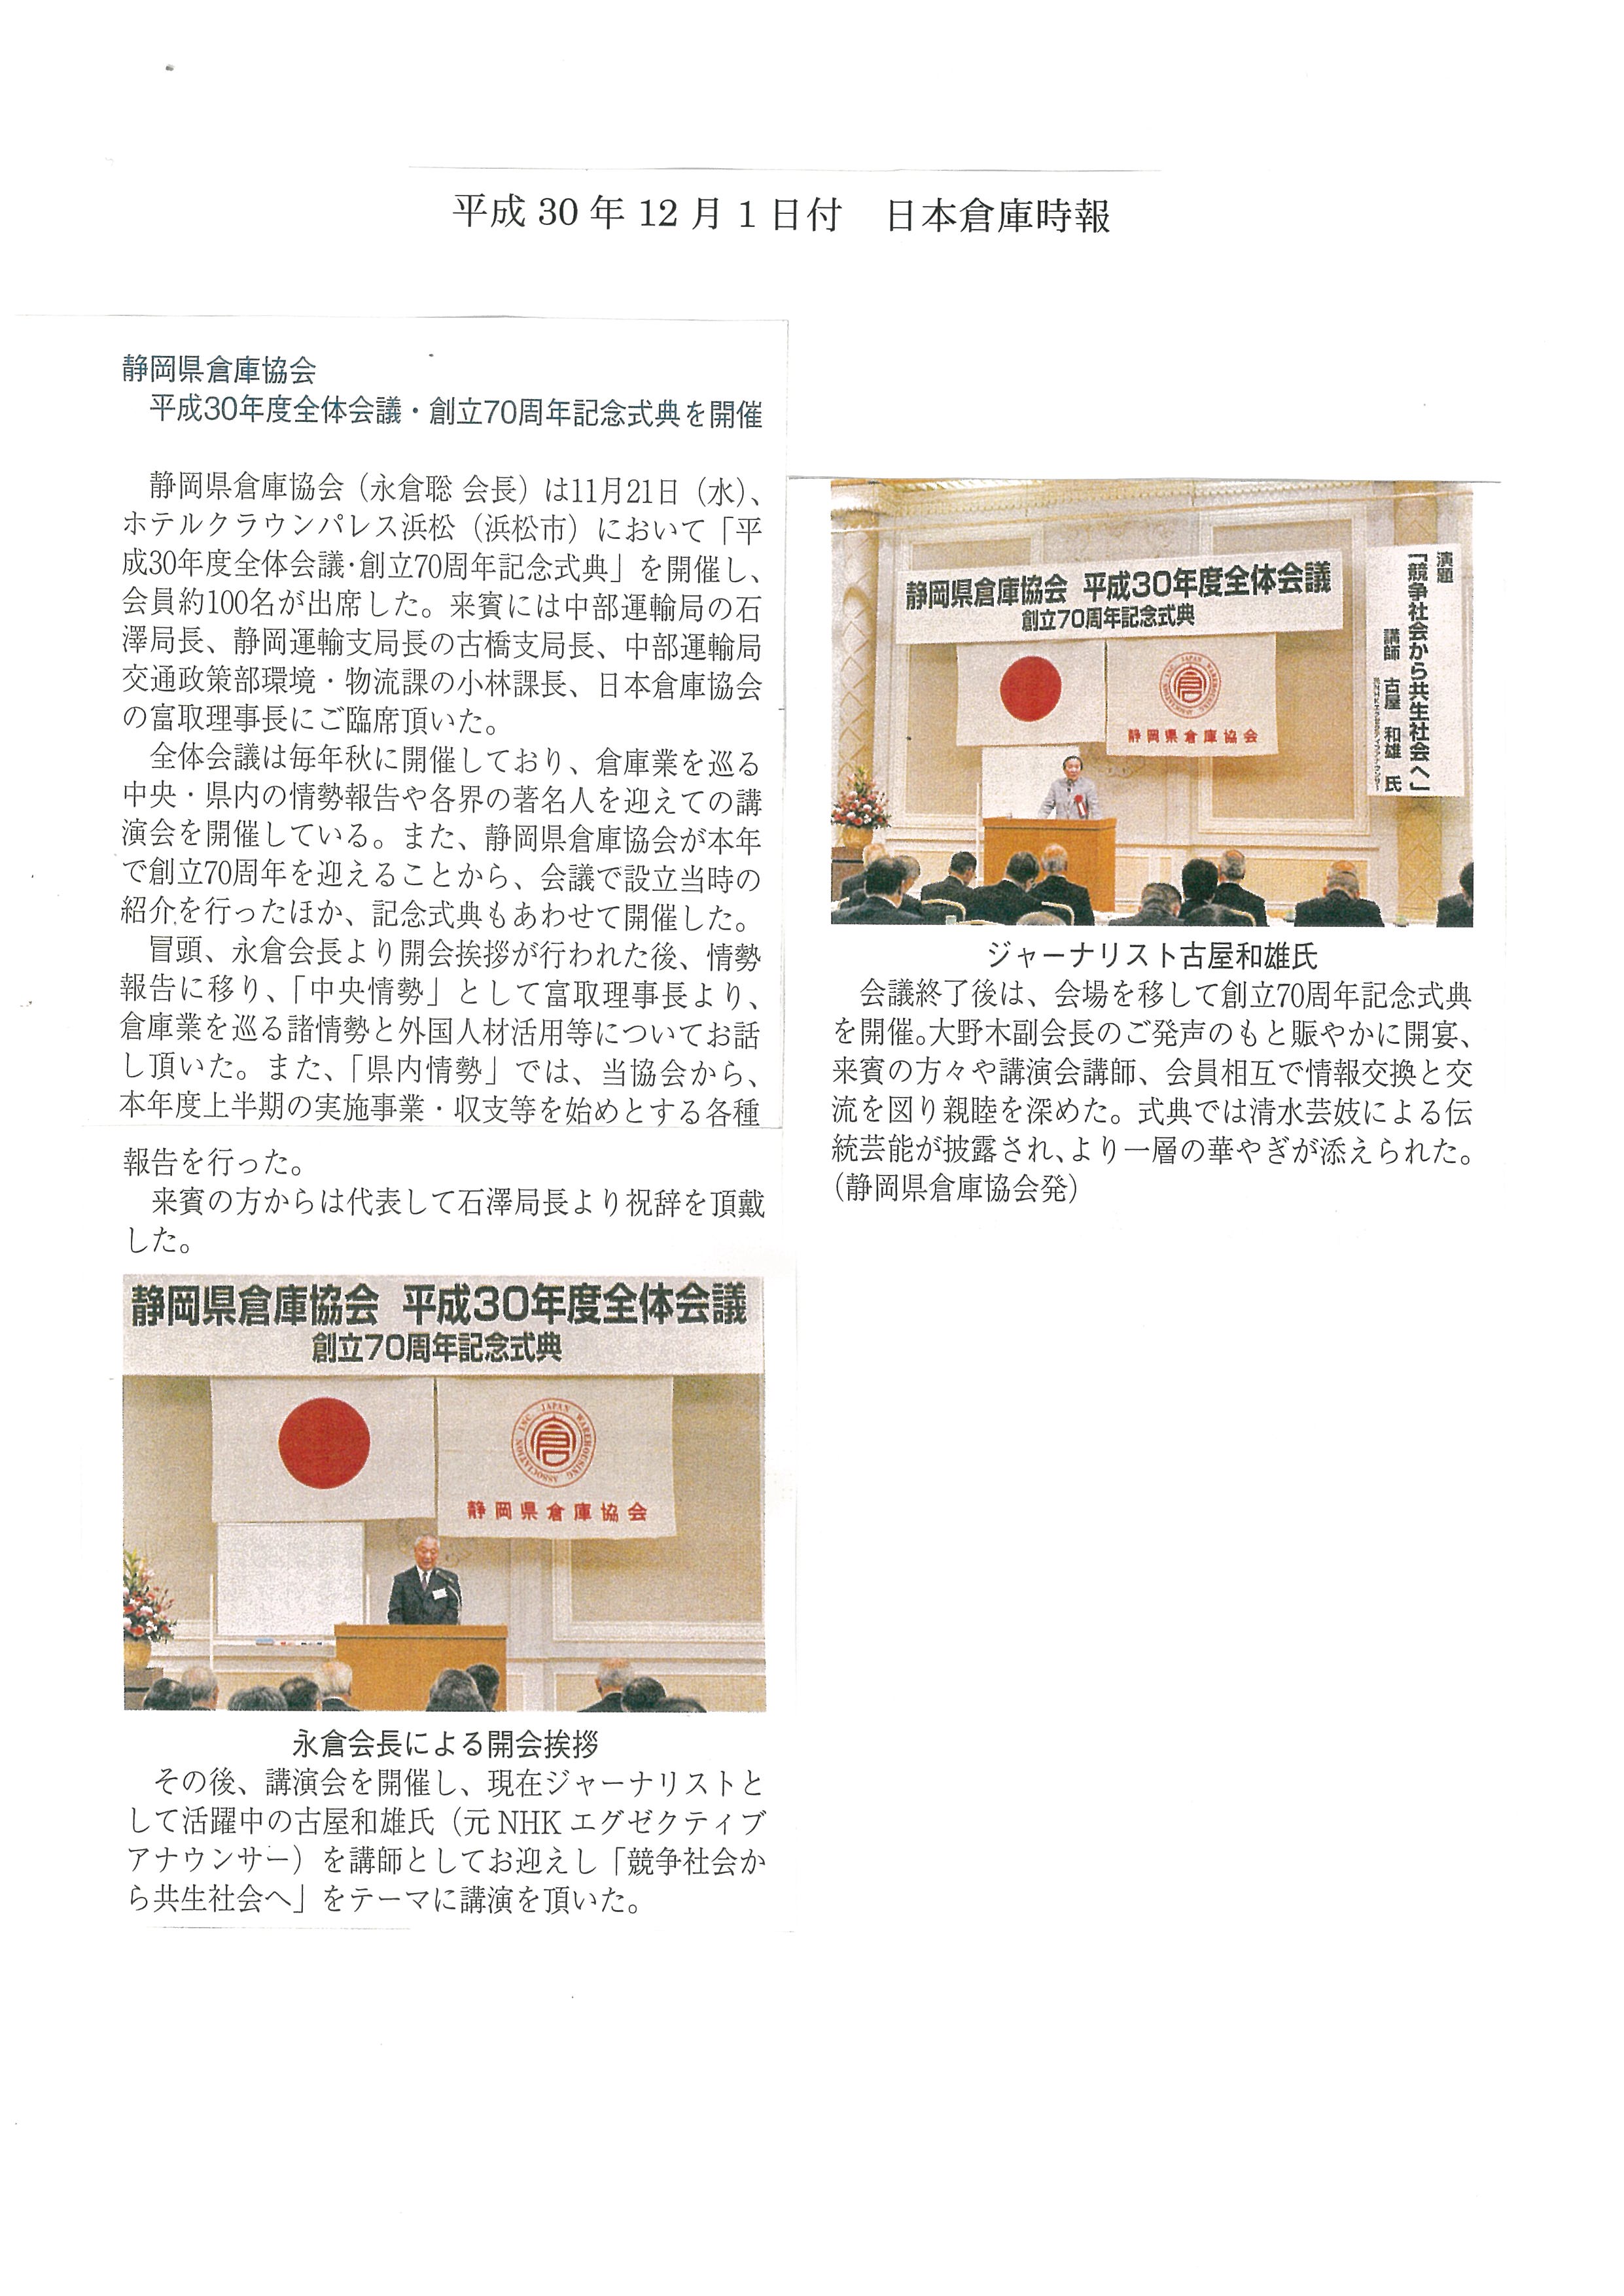 日本倉庫時報記事　静岡県倉庫協会　平成30年度全体会議・創立70周年記念式典を開催